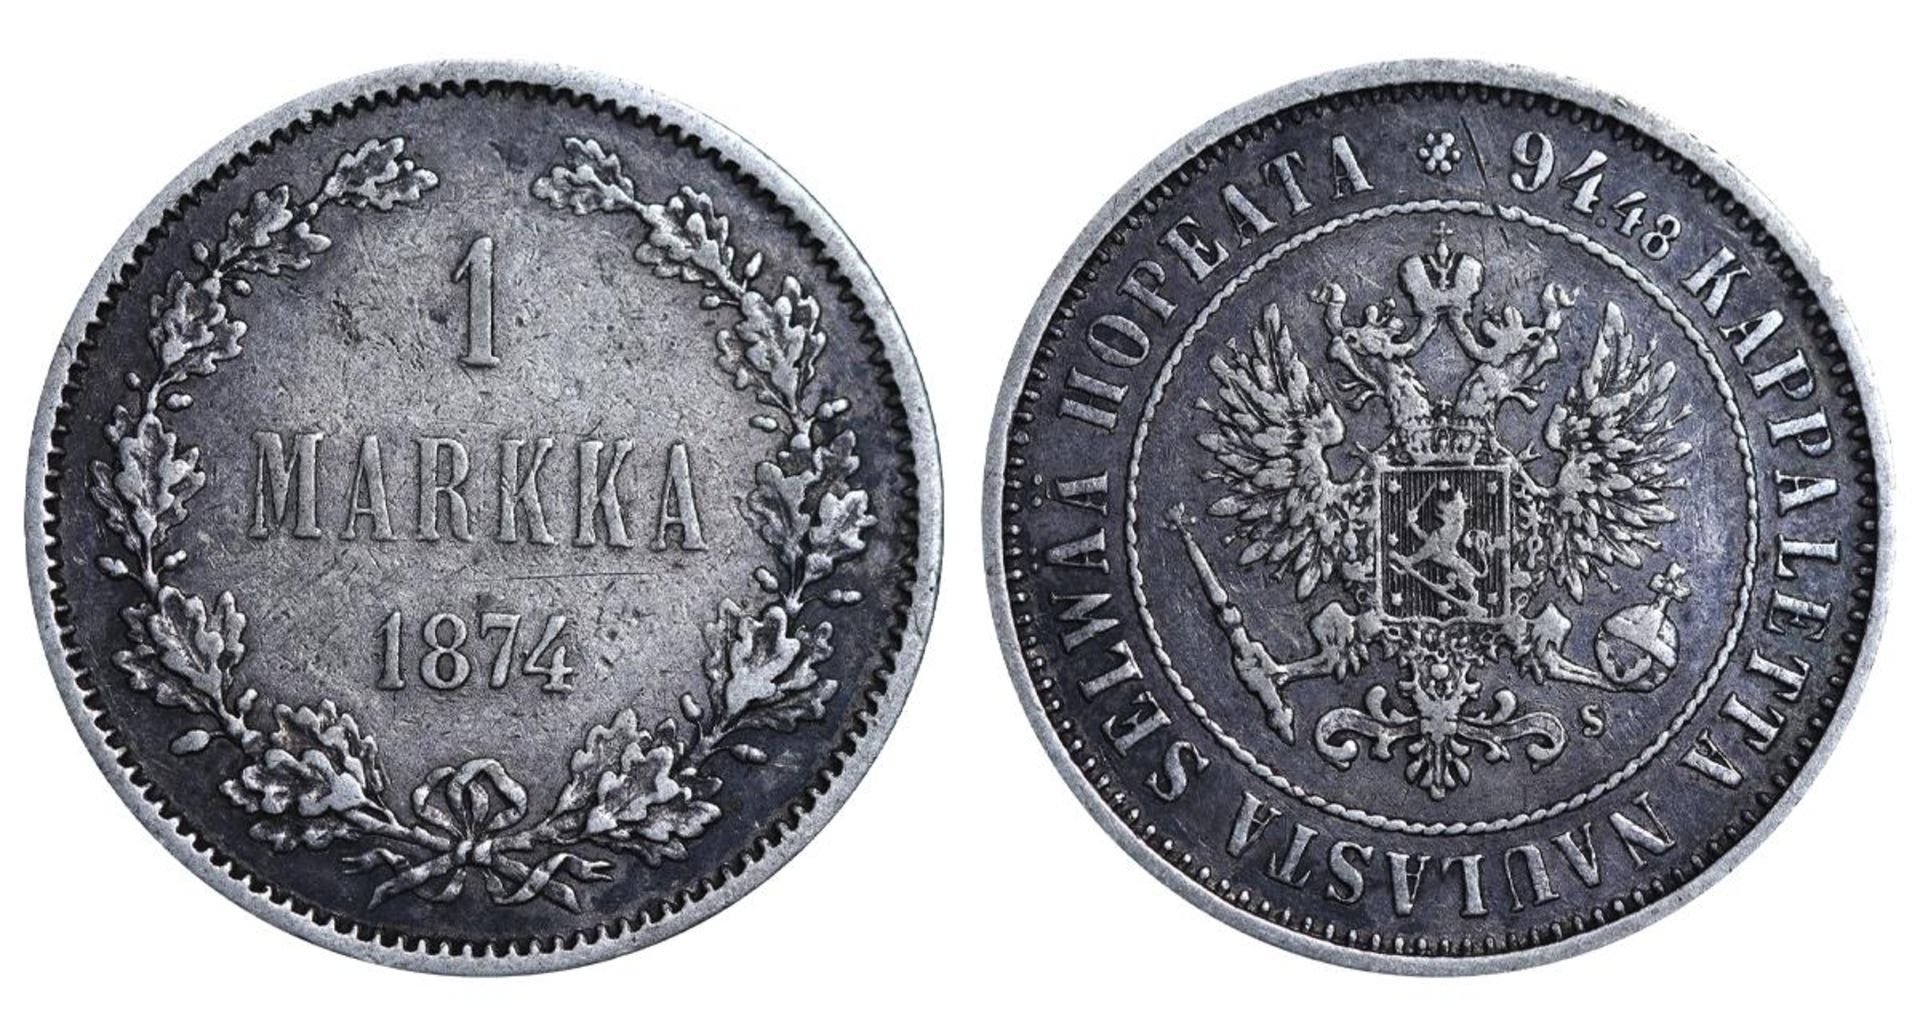 Russian Empire, 1 Markka, 1874 year, S